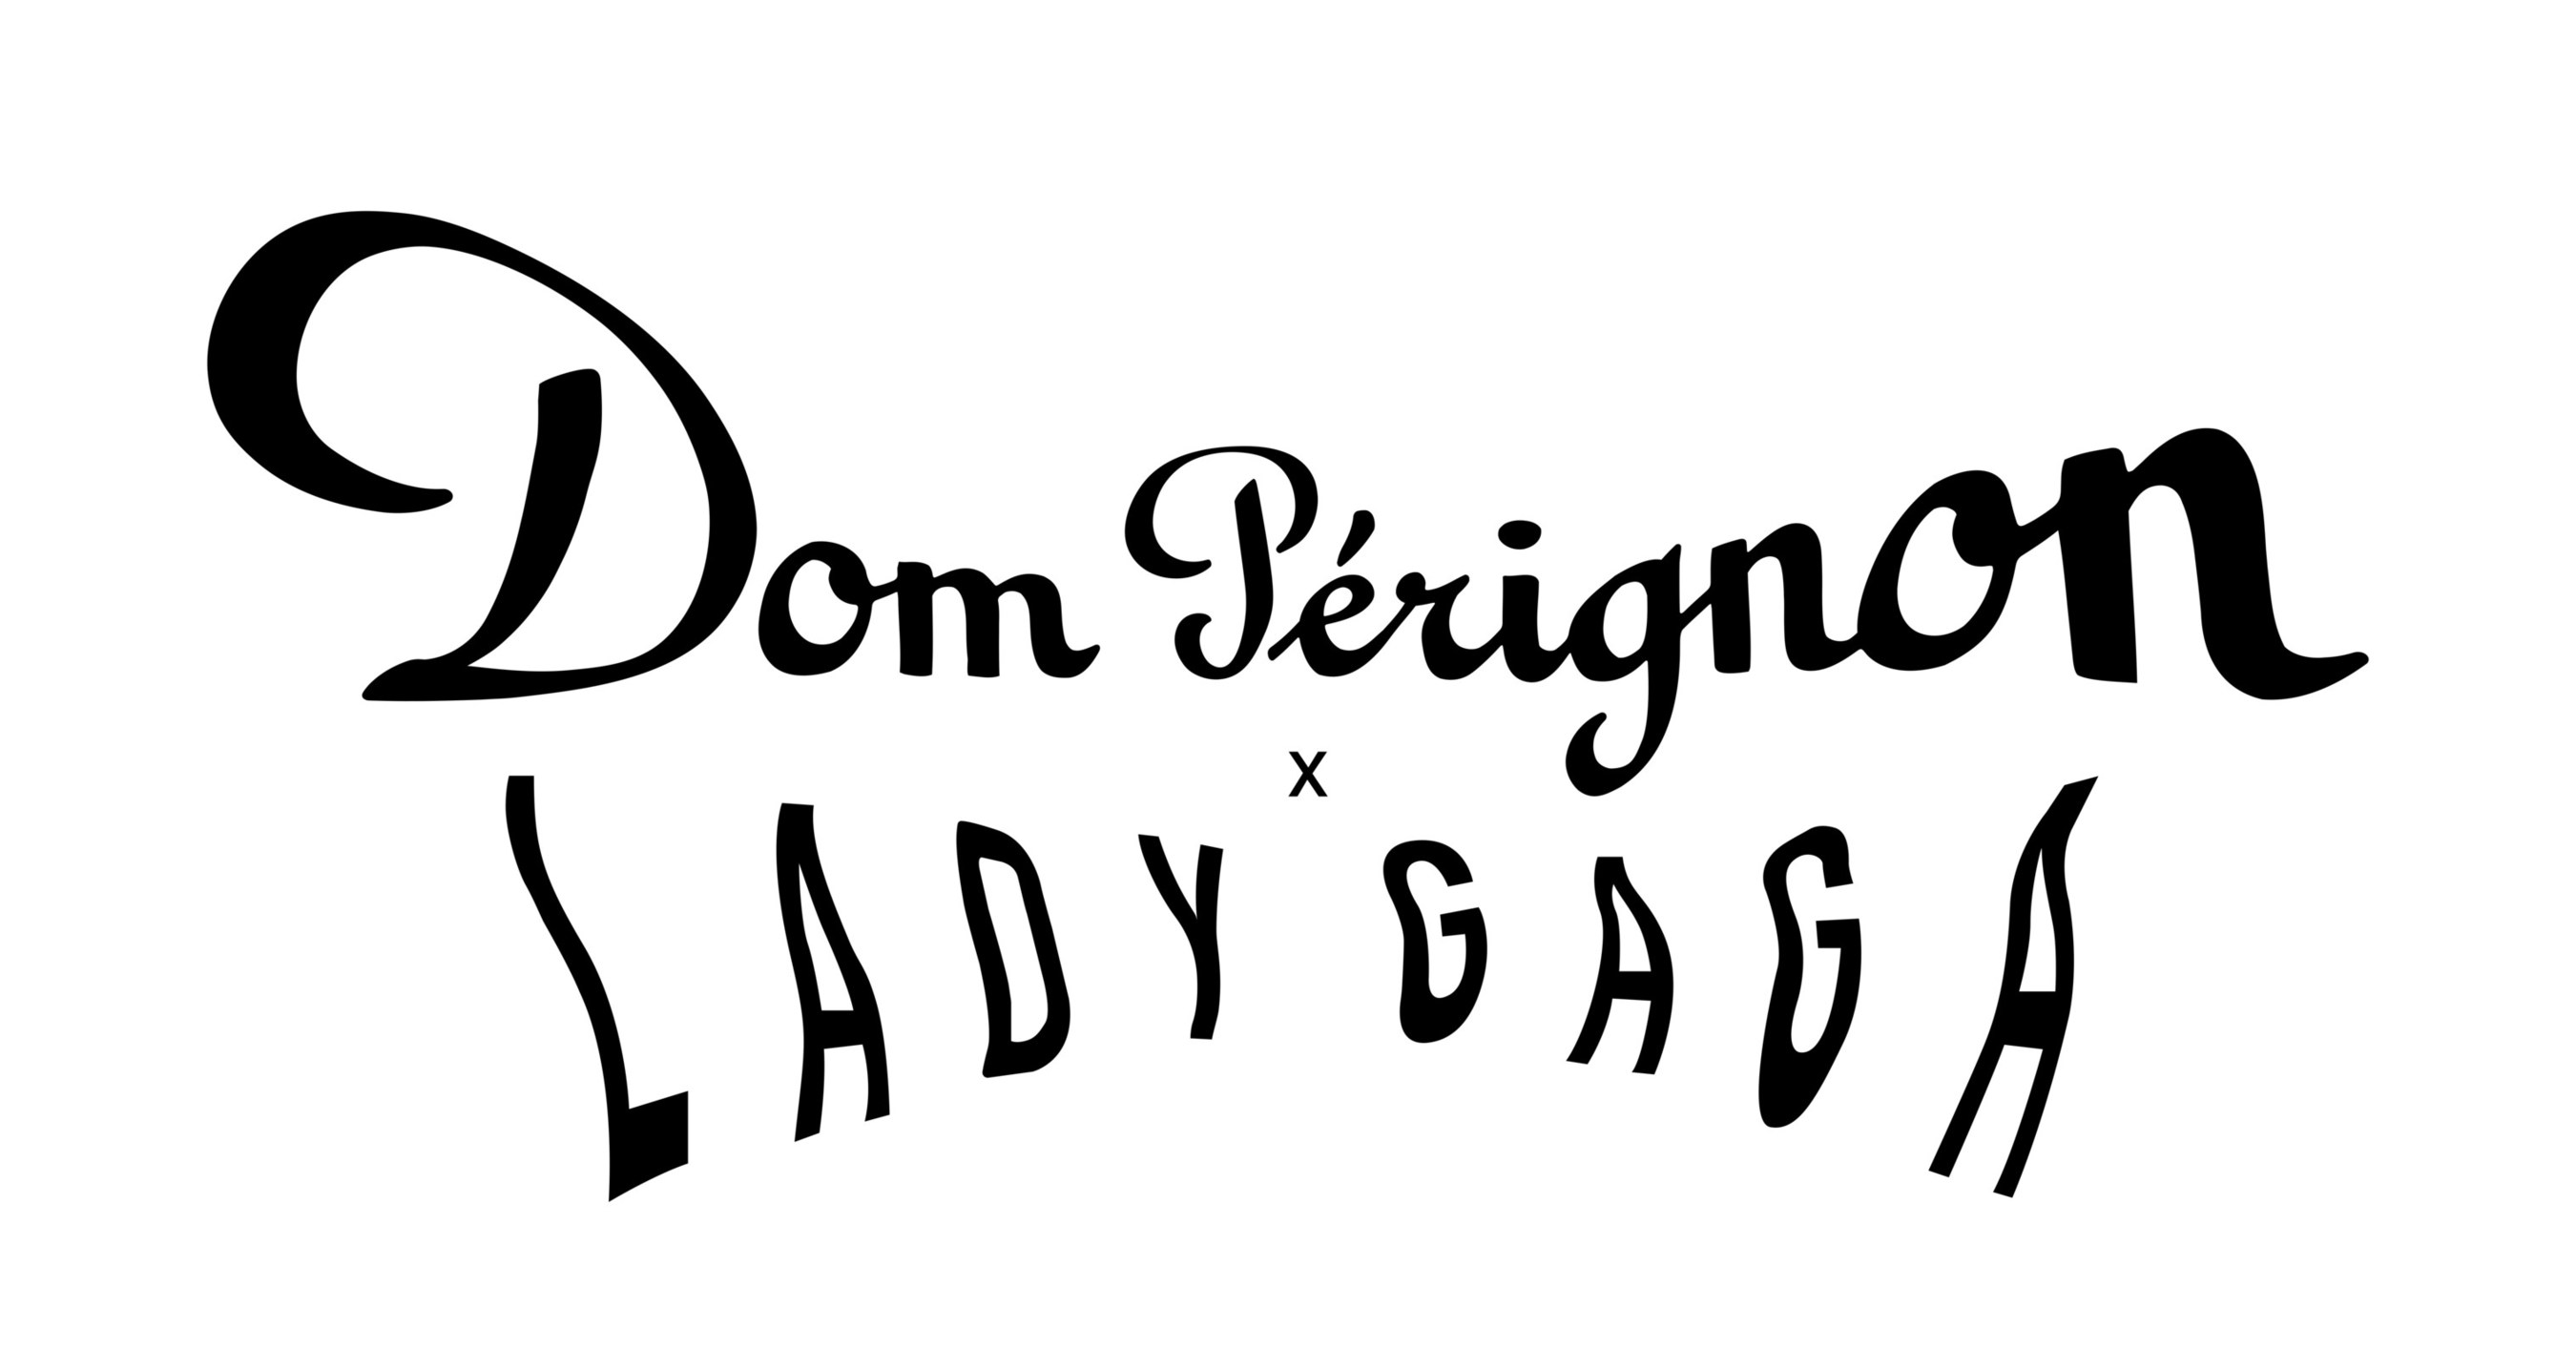 Dom Pérignon - Lady gaga & Dom Pérignon